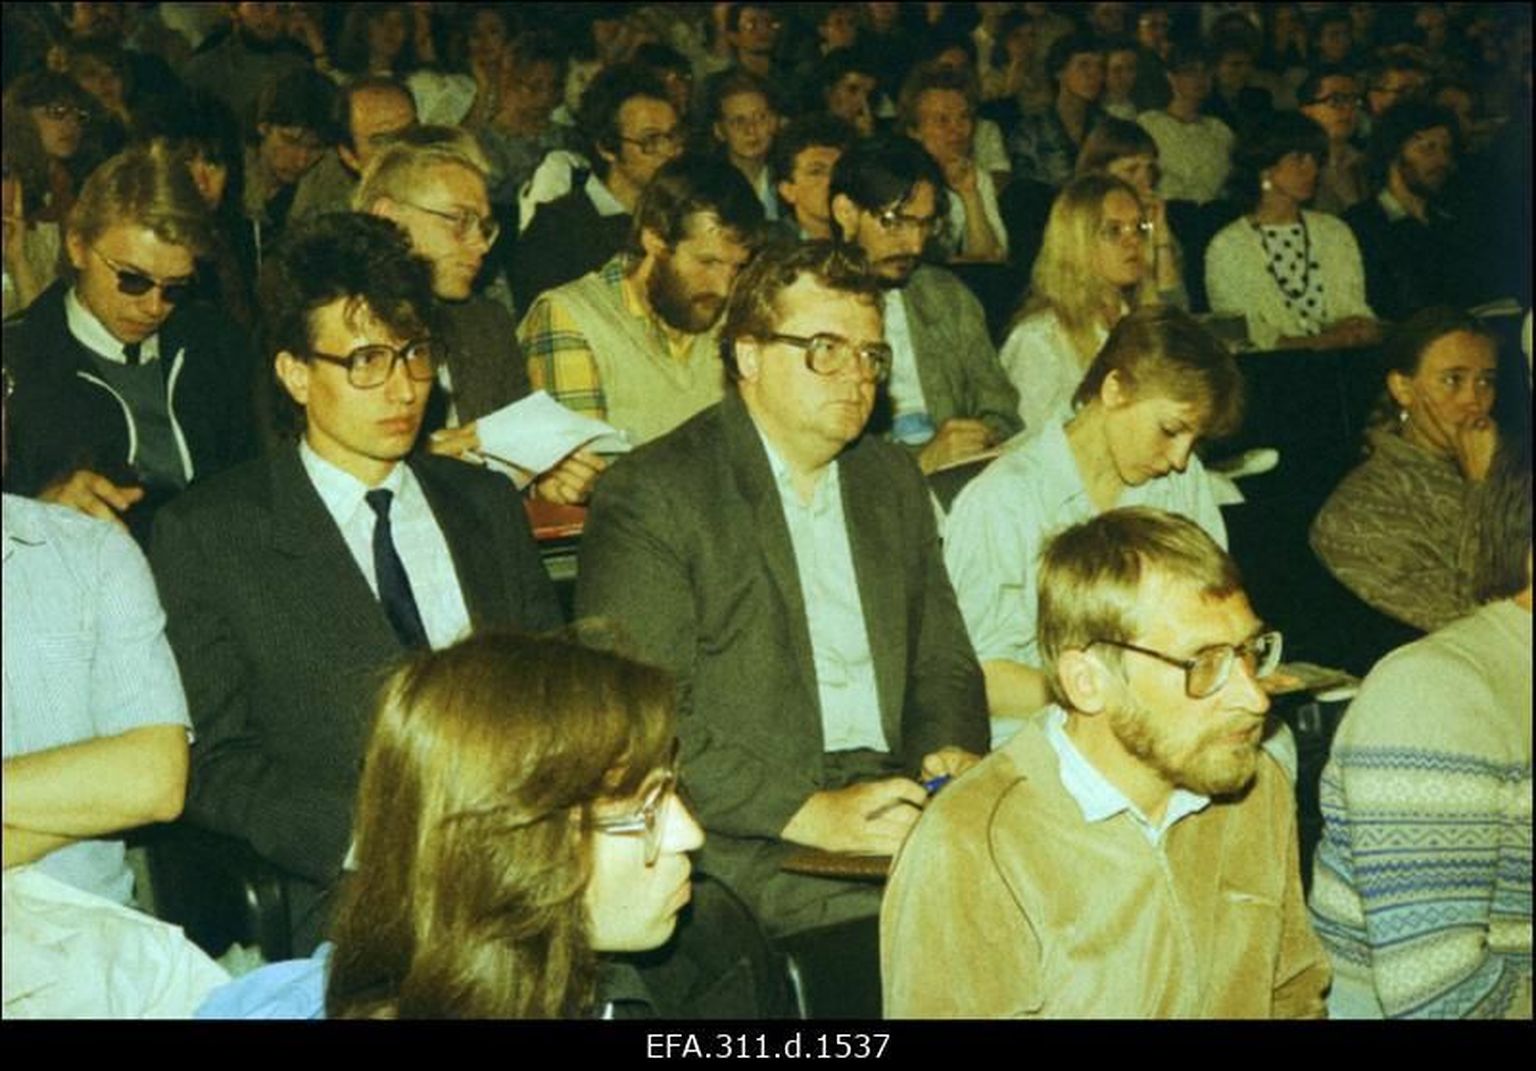 Sõltumatu Noortefoorum 4. juunil 1988 Tallinnas kino Kosmos saalis; esiplaanil Avo Üprus ja Sulev Kannike, nende selja taga Tõnis Lukas, Edgar Savisaar, Vilja Laanaru jt.